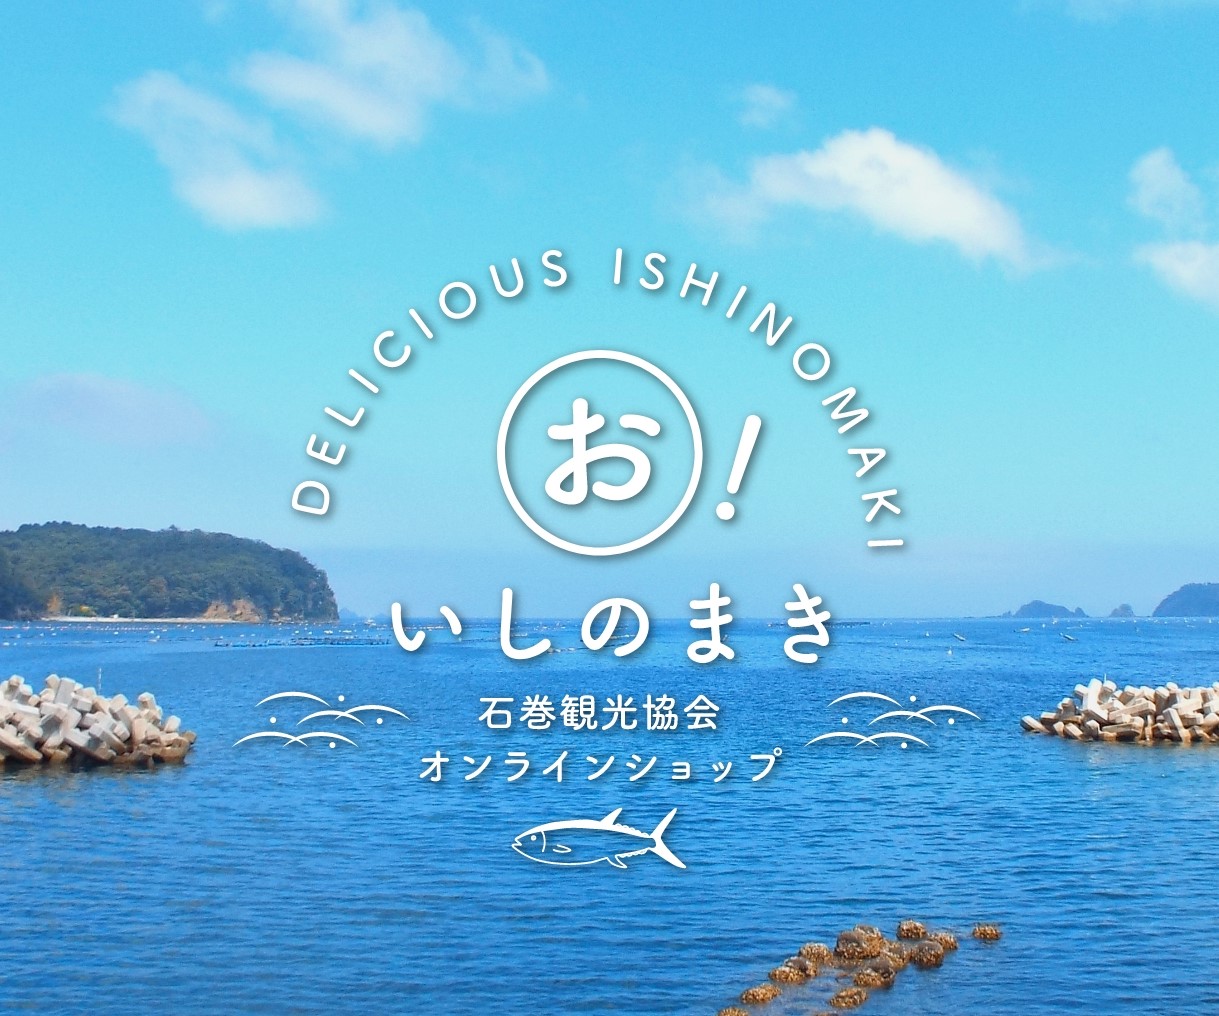 石巻観光協会　オンラインショッピング